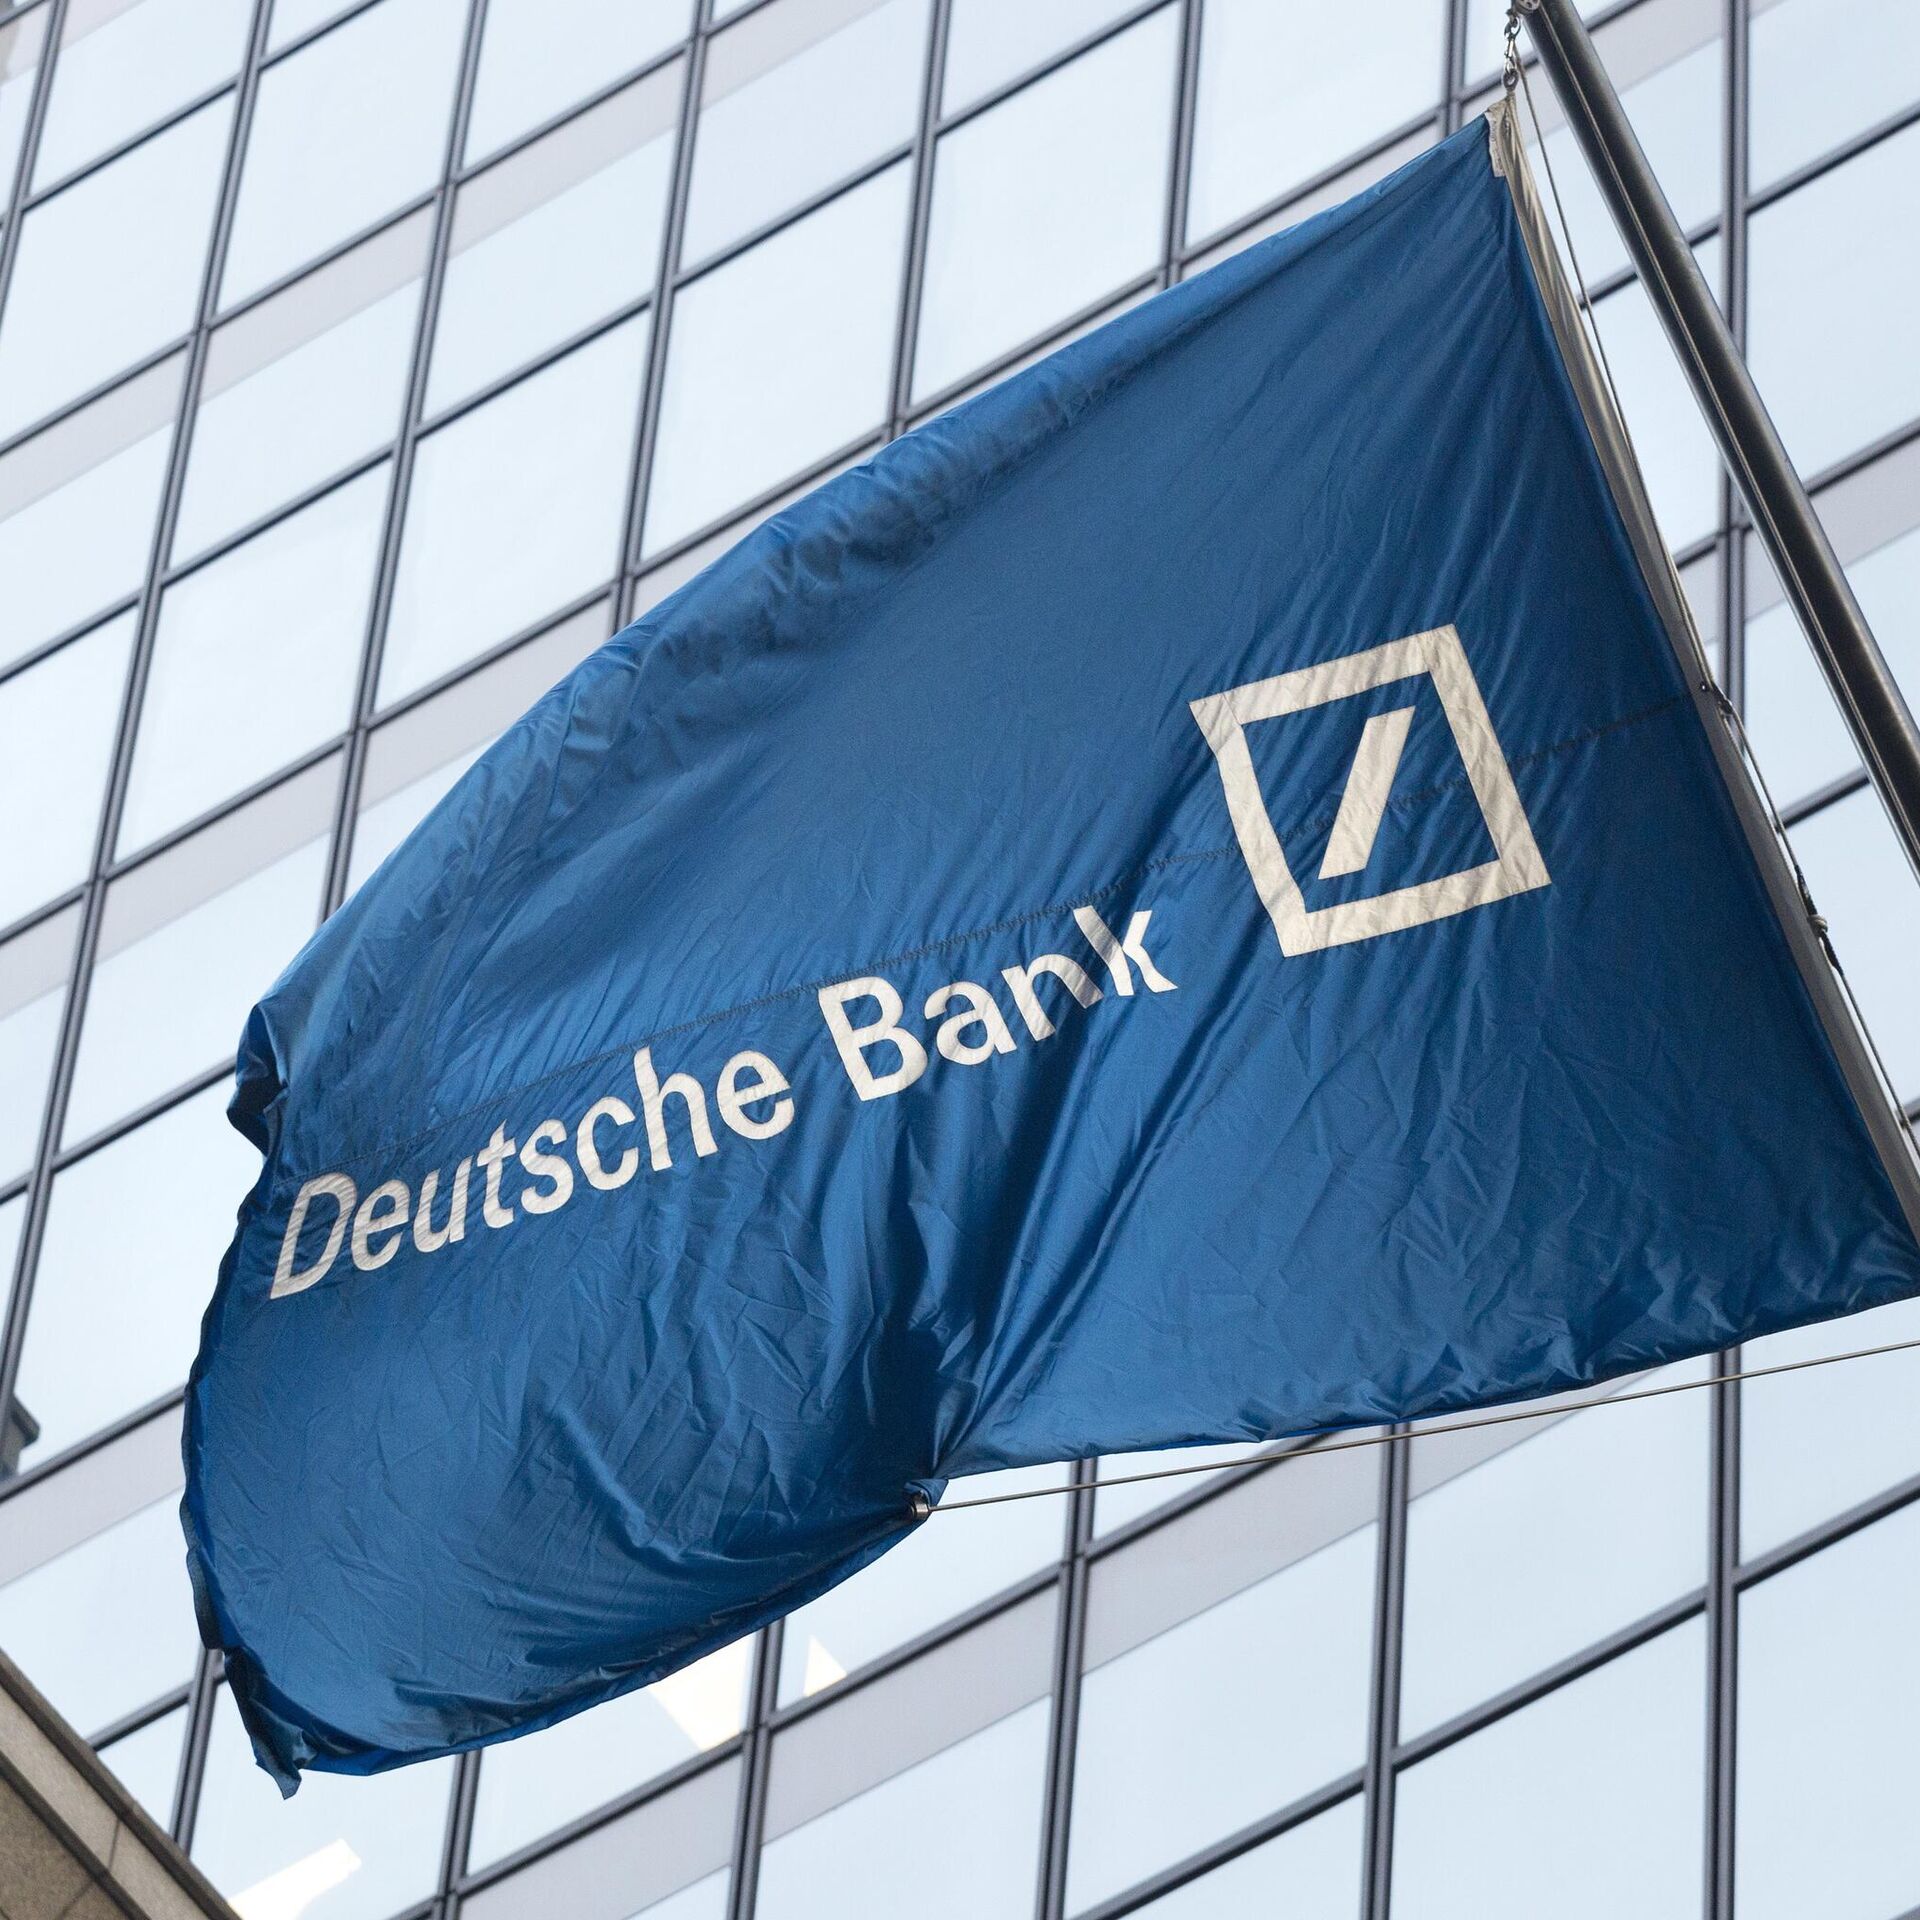 Deutsche Bank US Destined for ‘Genuine’ Recession Amid AntiInflation